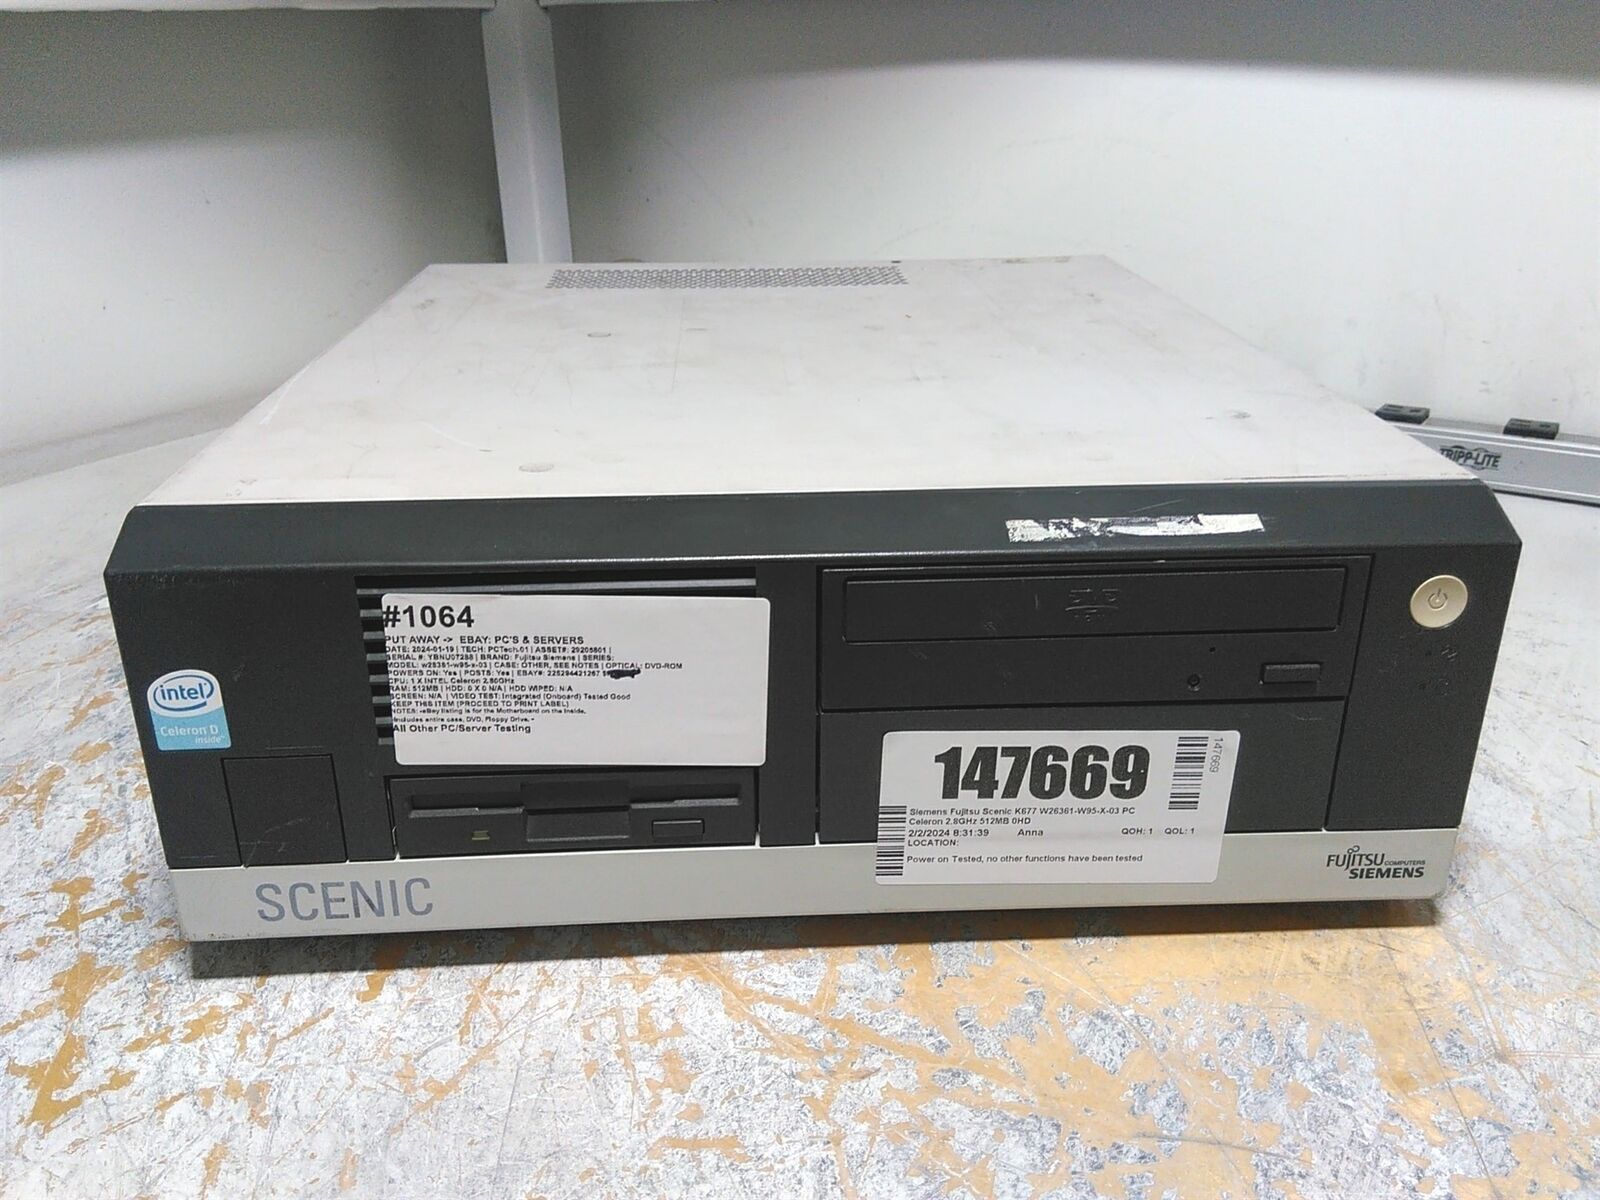 Siemens Fujitsu Scenic K677 W26361-W95-X-03 PC Celeron 2.8GHz 512MB 0HD 